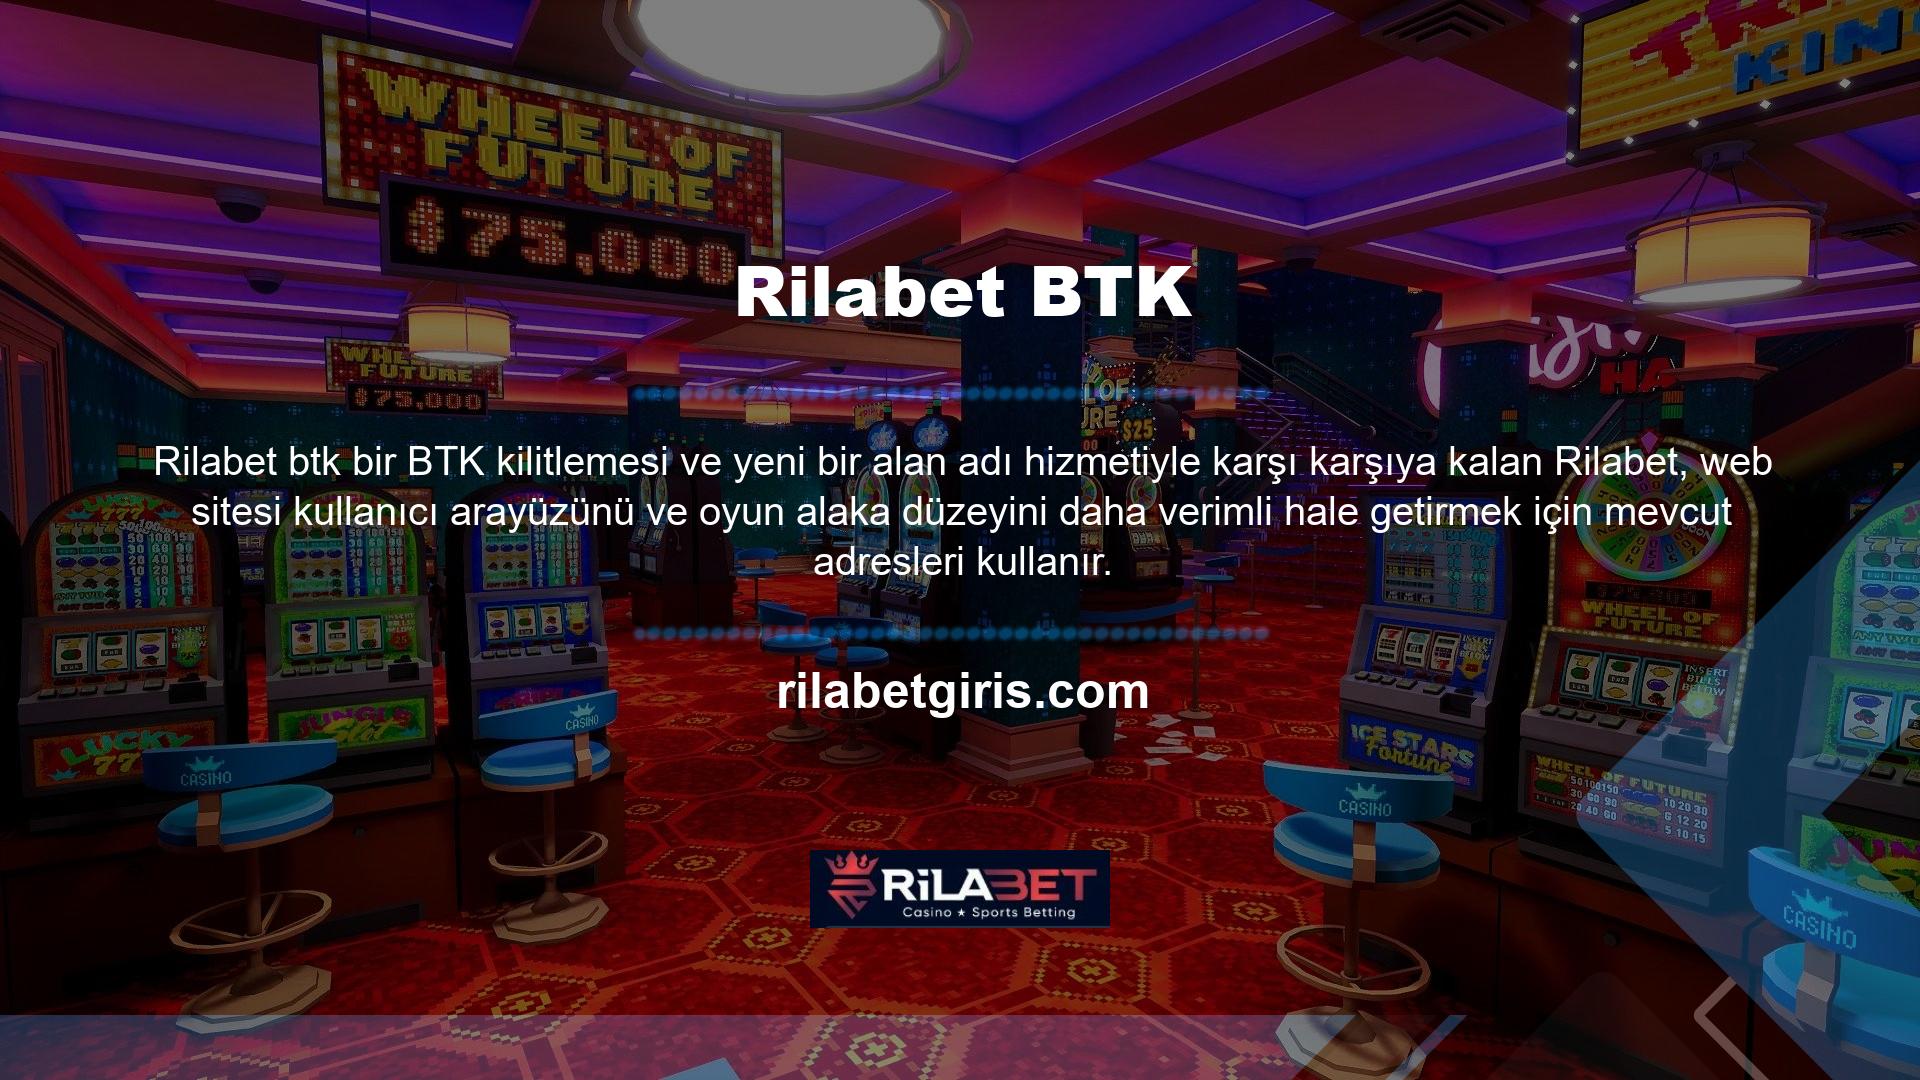 Sitede rulet, blackjack, slot oyunları, video oyunları, 3D slotlar, sanal ve canlı bahis oyunları ile tüm casino oyunları sunulmaktadır